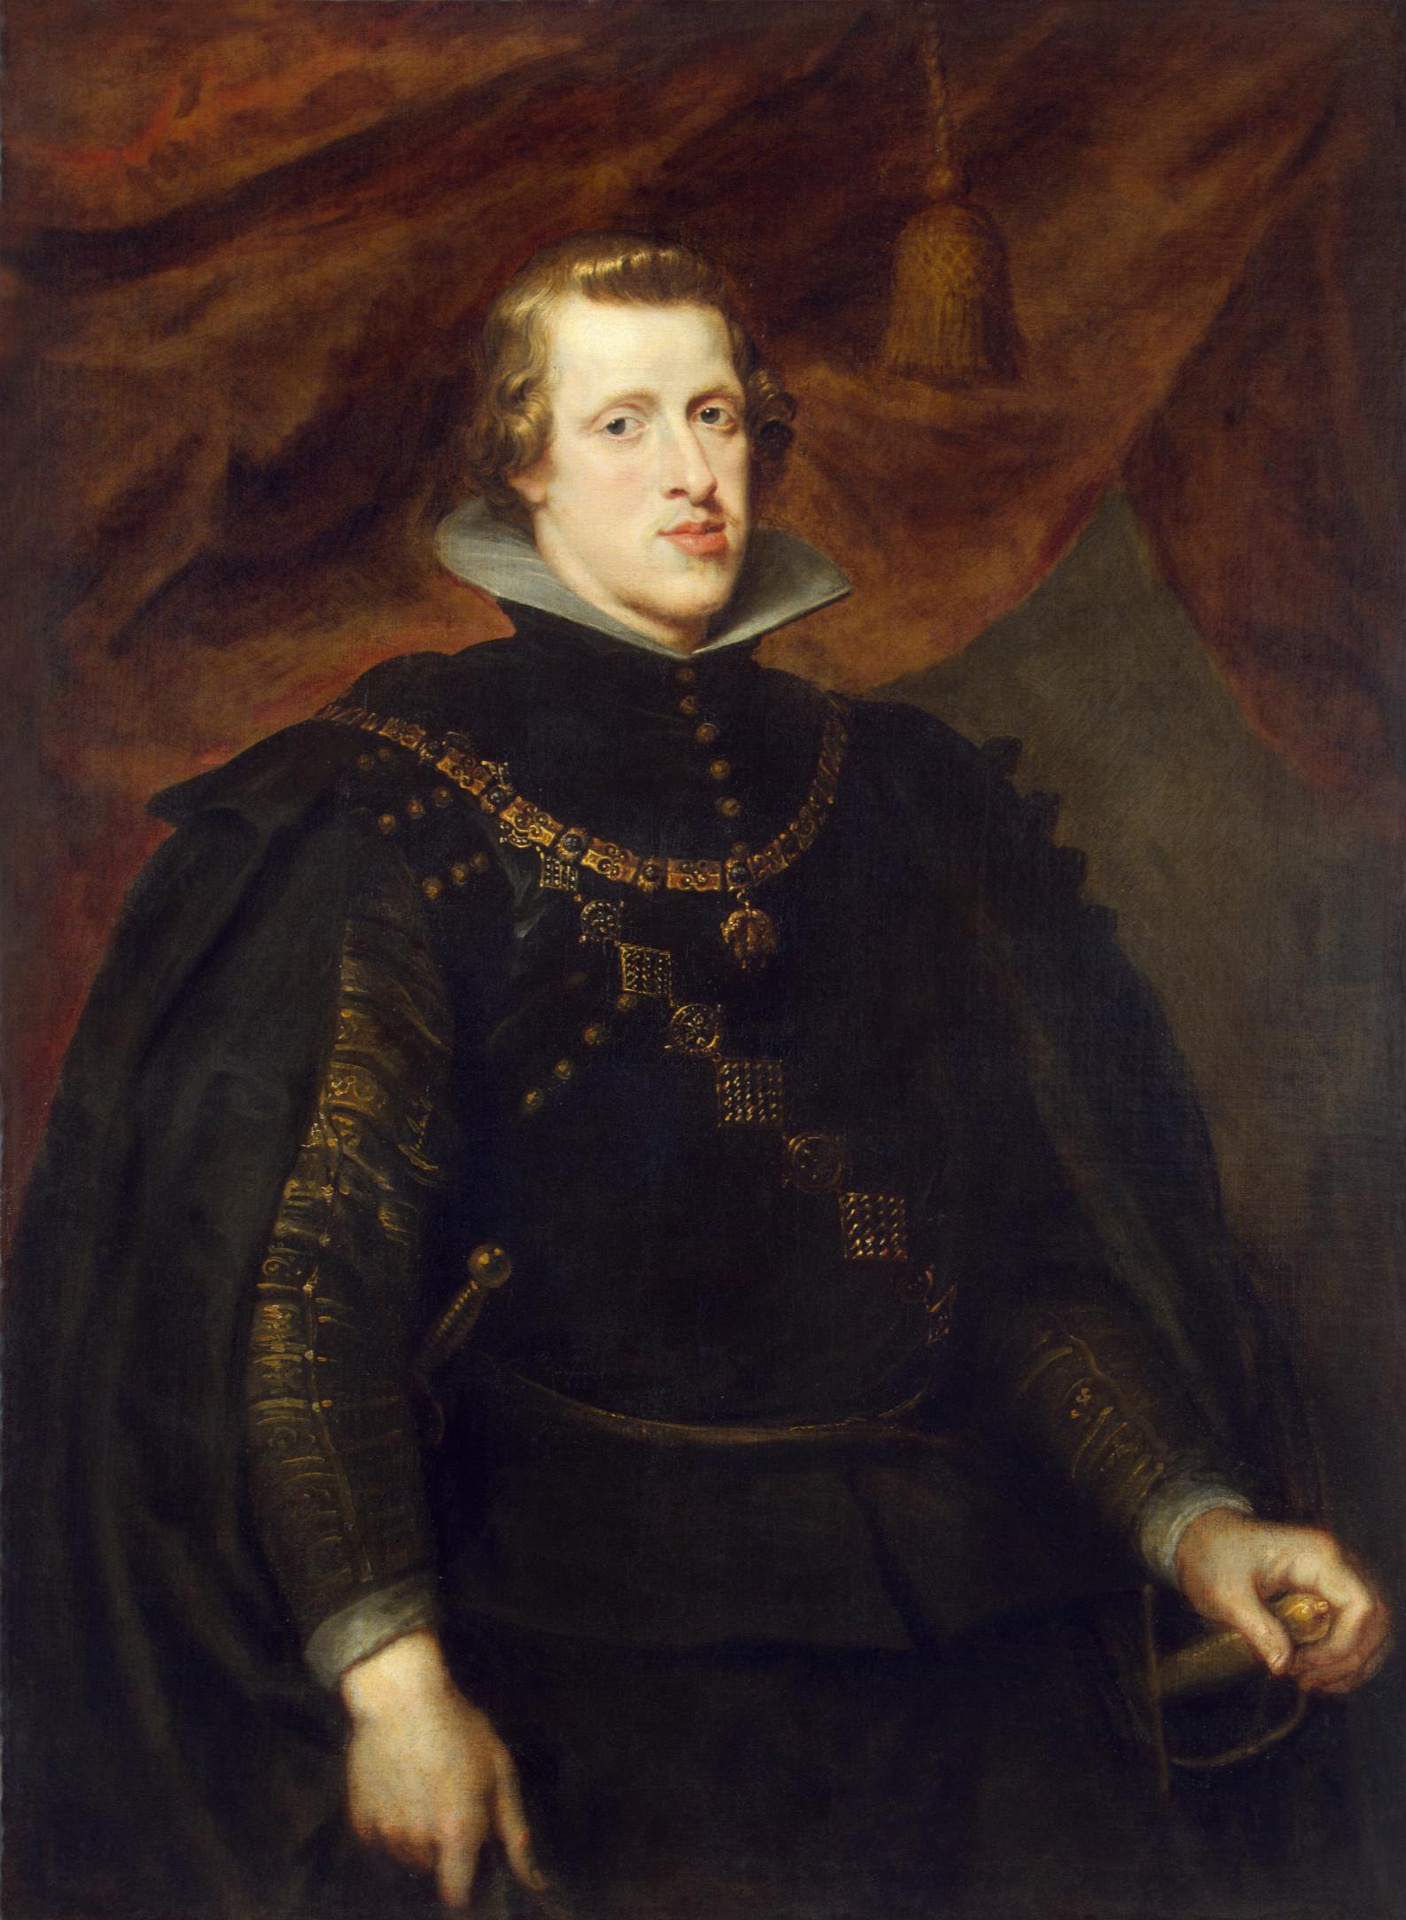 Питер Пауль Рубенс. "Портрет Филиппа IV, короля Испании". 1628-1629. Эрмитаж, Санкт-Петербург.